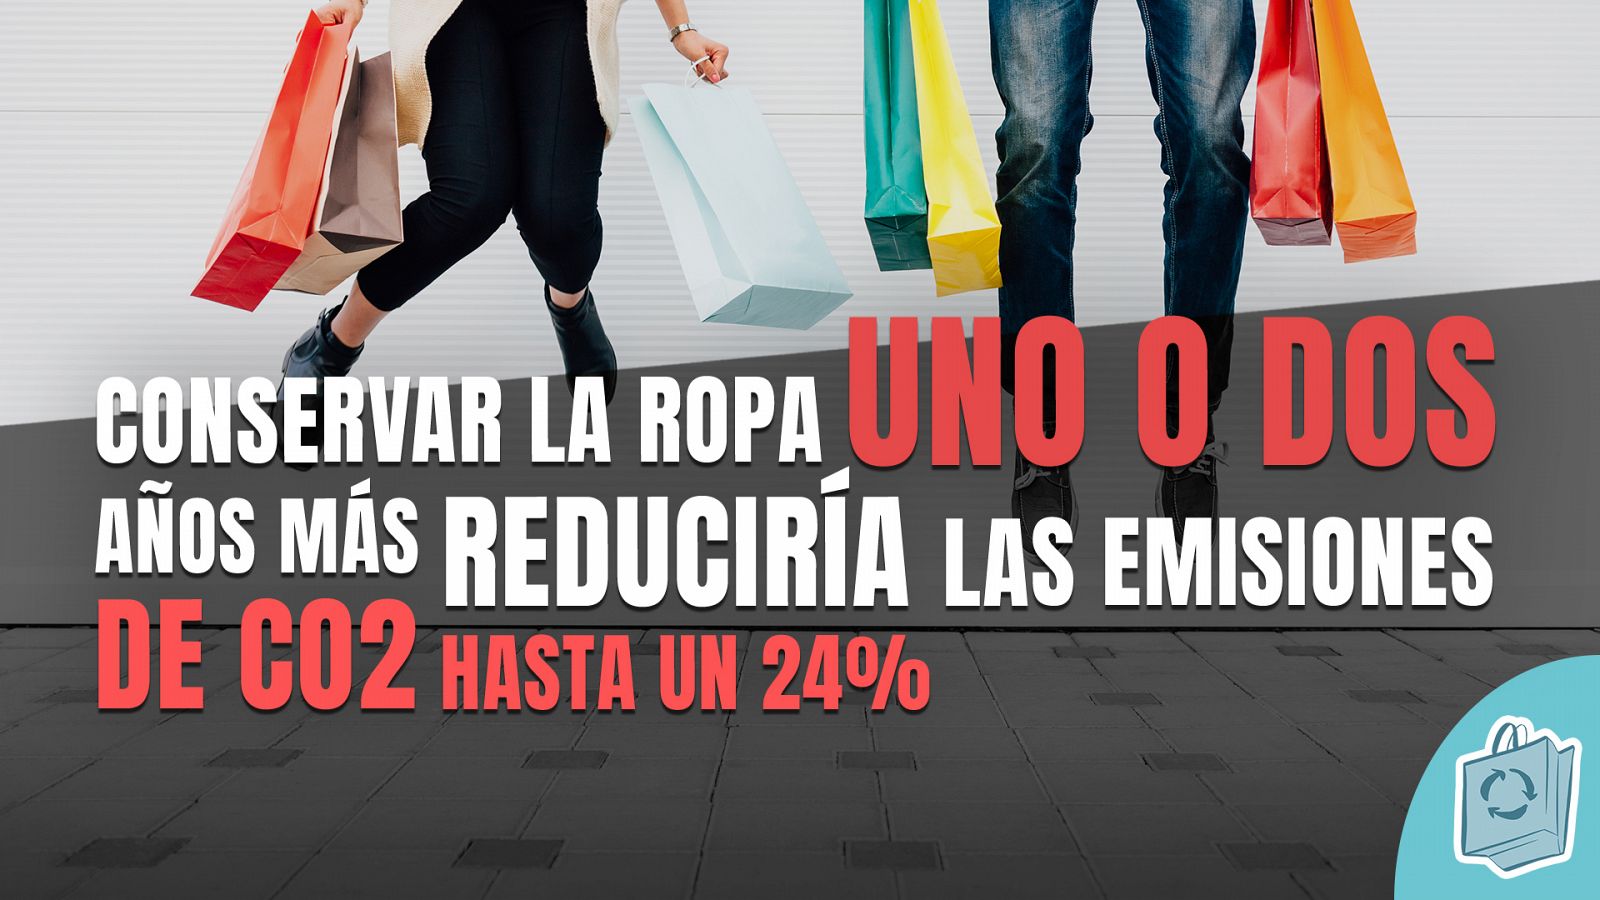 #ESTAMOSATIEMPO: Conservar la ropa dos años más reduciría las emisiones de CO2 hasta un 24% -RTVE.es